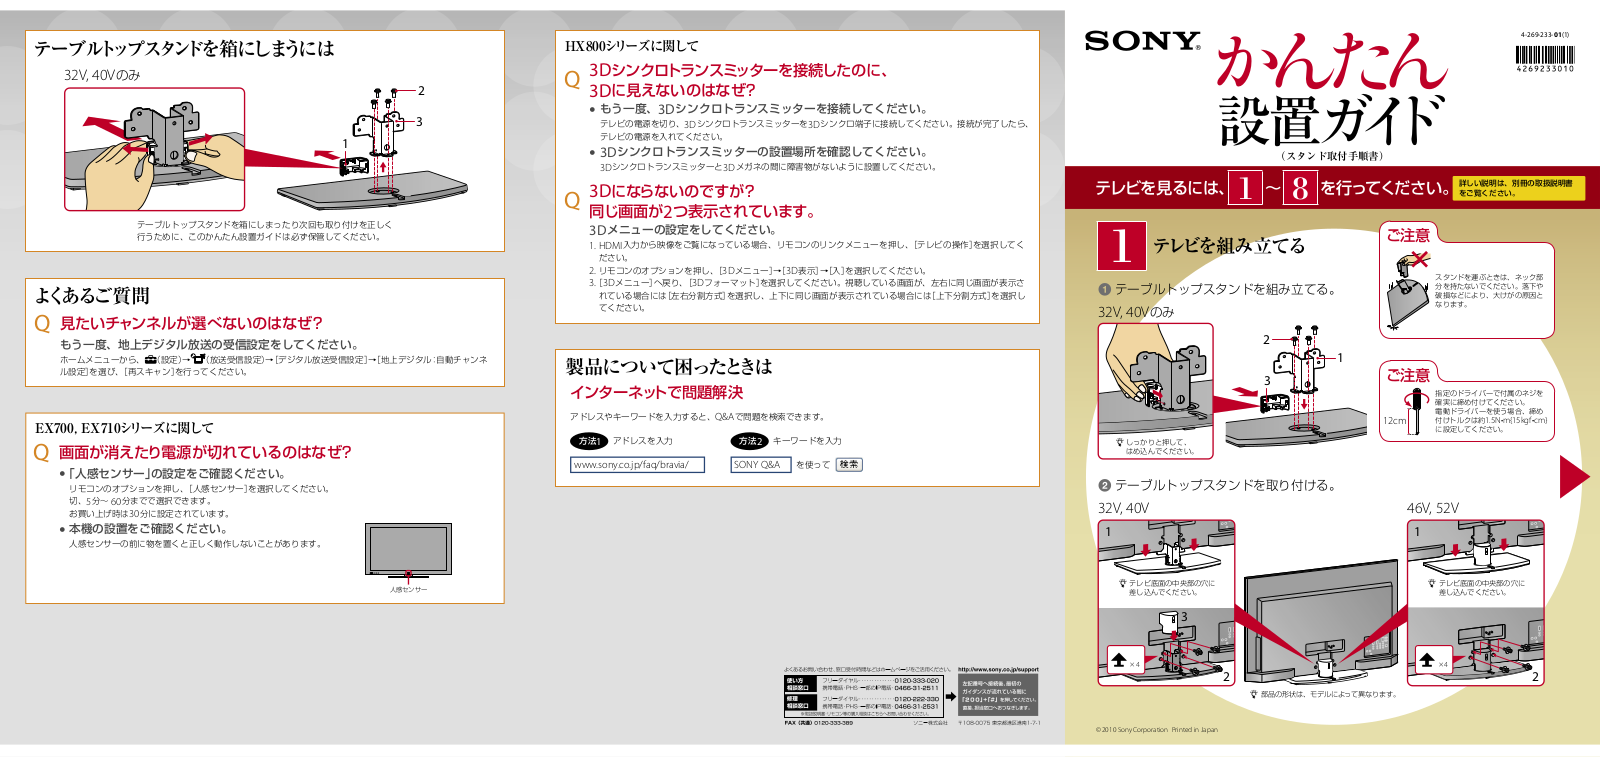 Sony KDL-52EX700, BRAVIA KDL-32EX710, KDL-40EX700, BRAVIA KDL-40EX710, KDL-32EX700 Manual